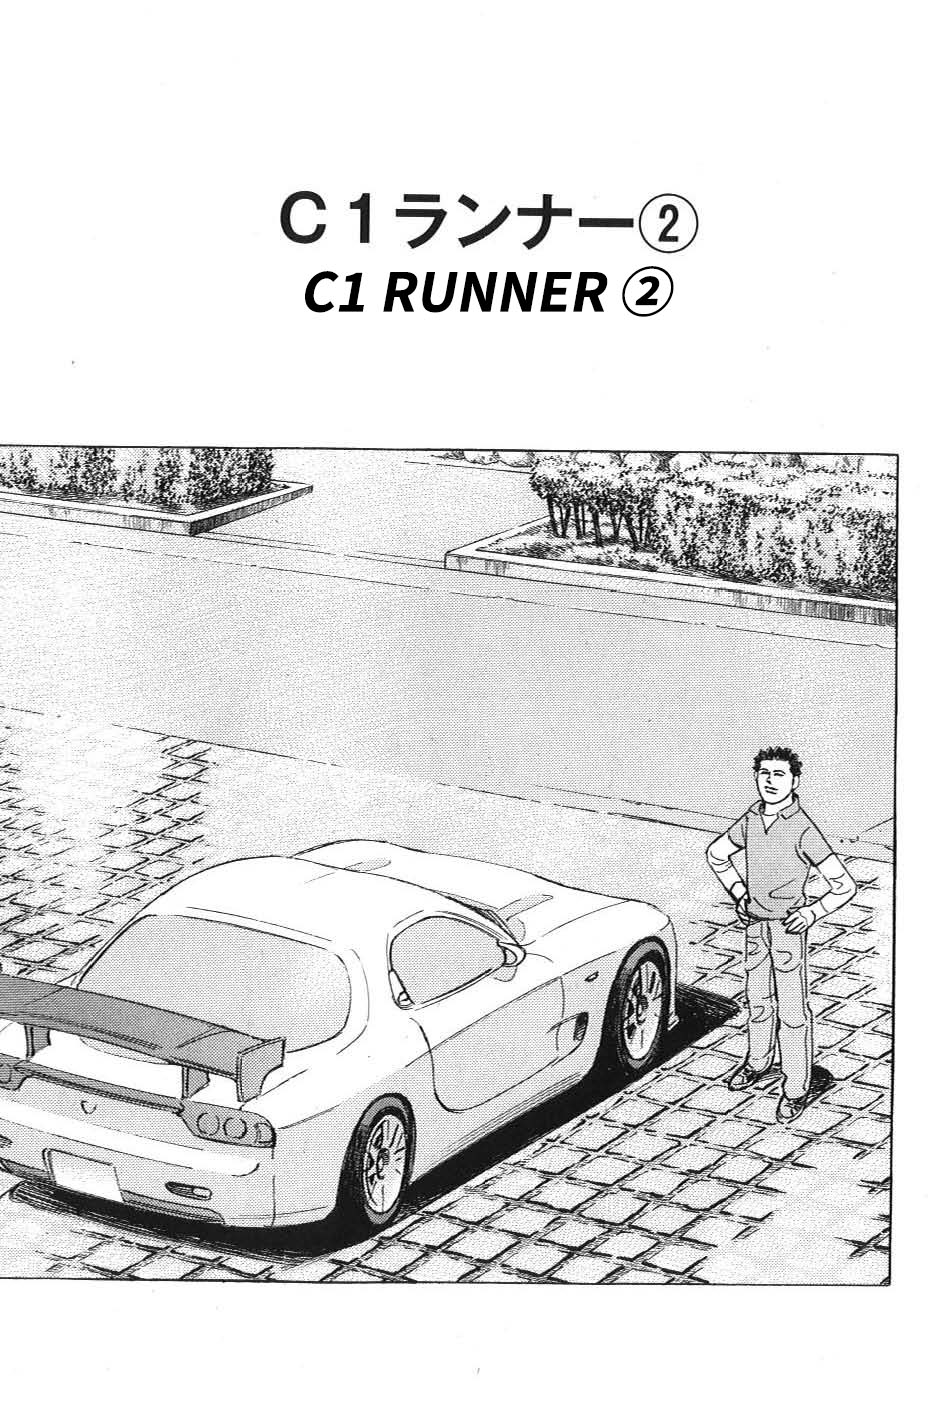 Wangan Midnight: C1 Runner Vol.1 Chapter 2: C1 Runner ② - Picture 1